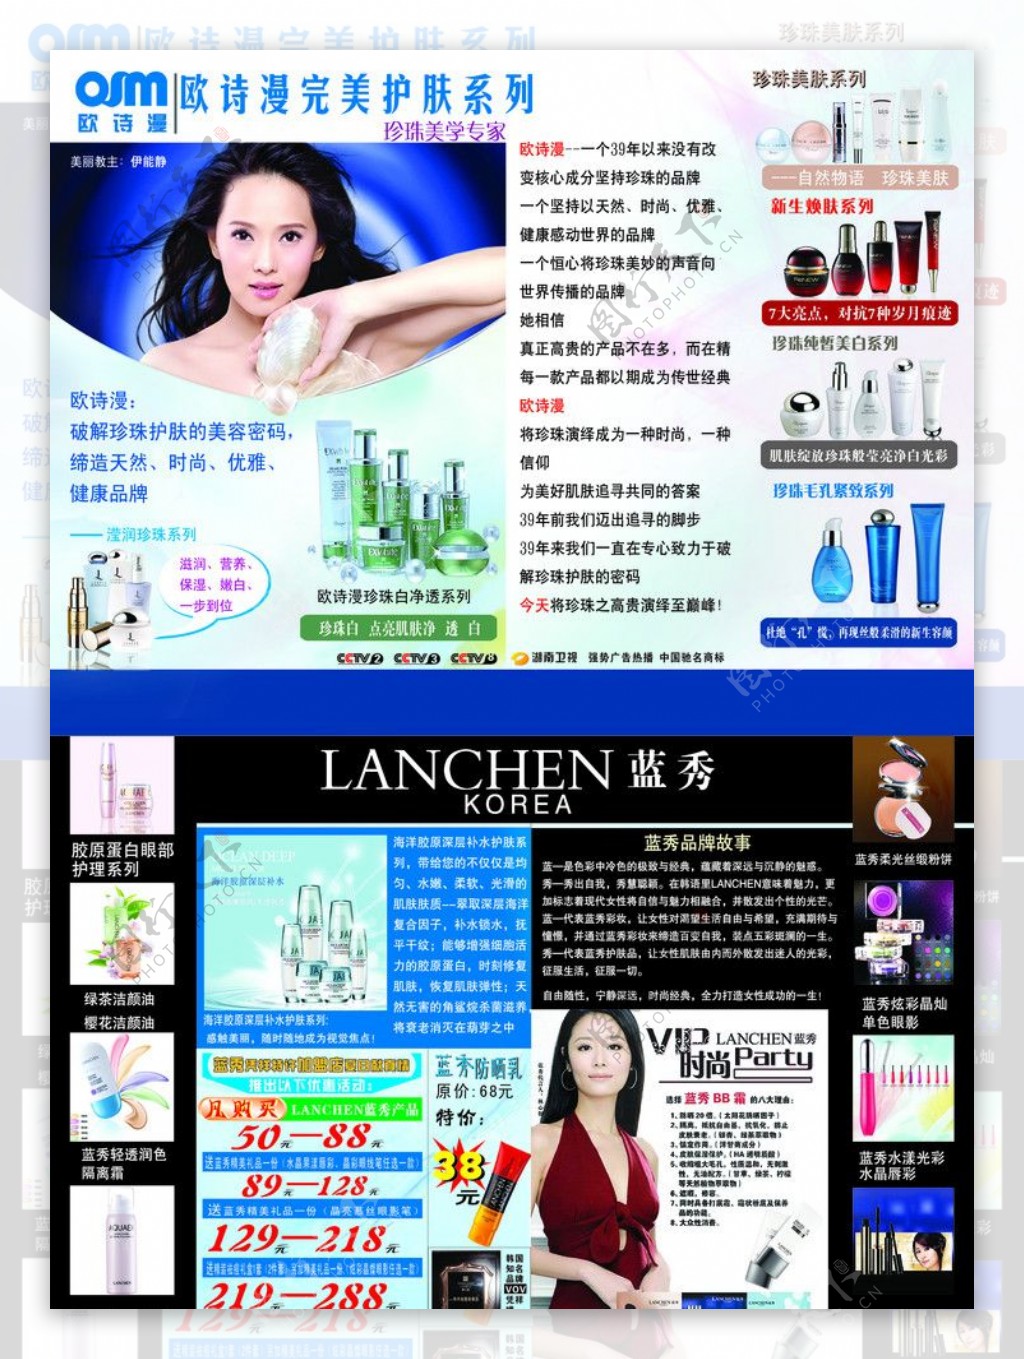 欧诗漫蓝秀化妆品广告宣传单分层图图片